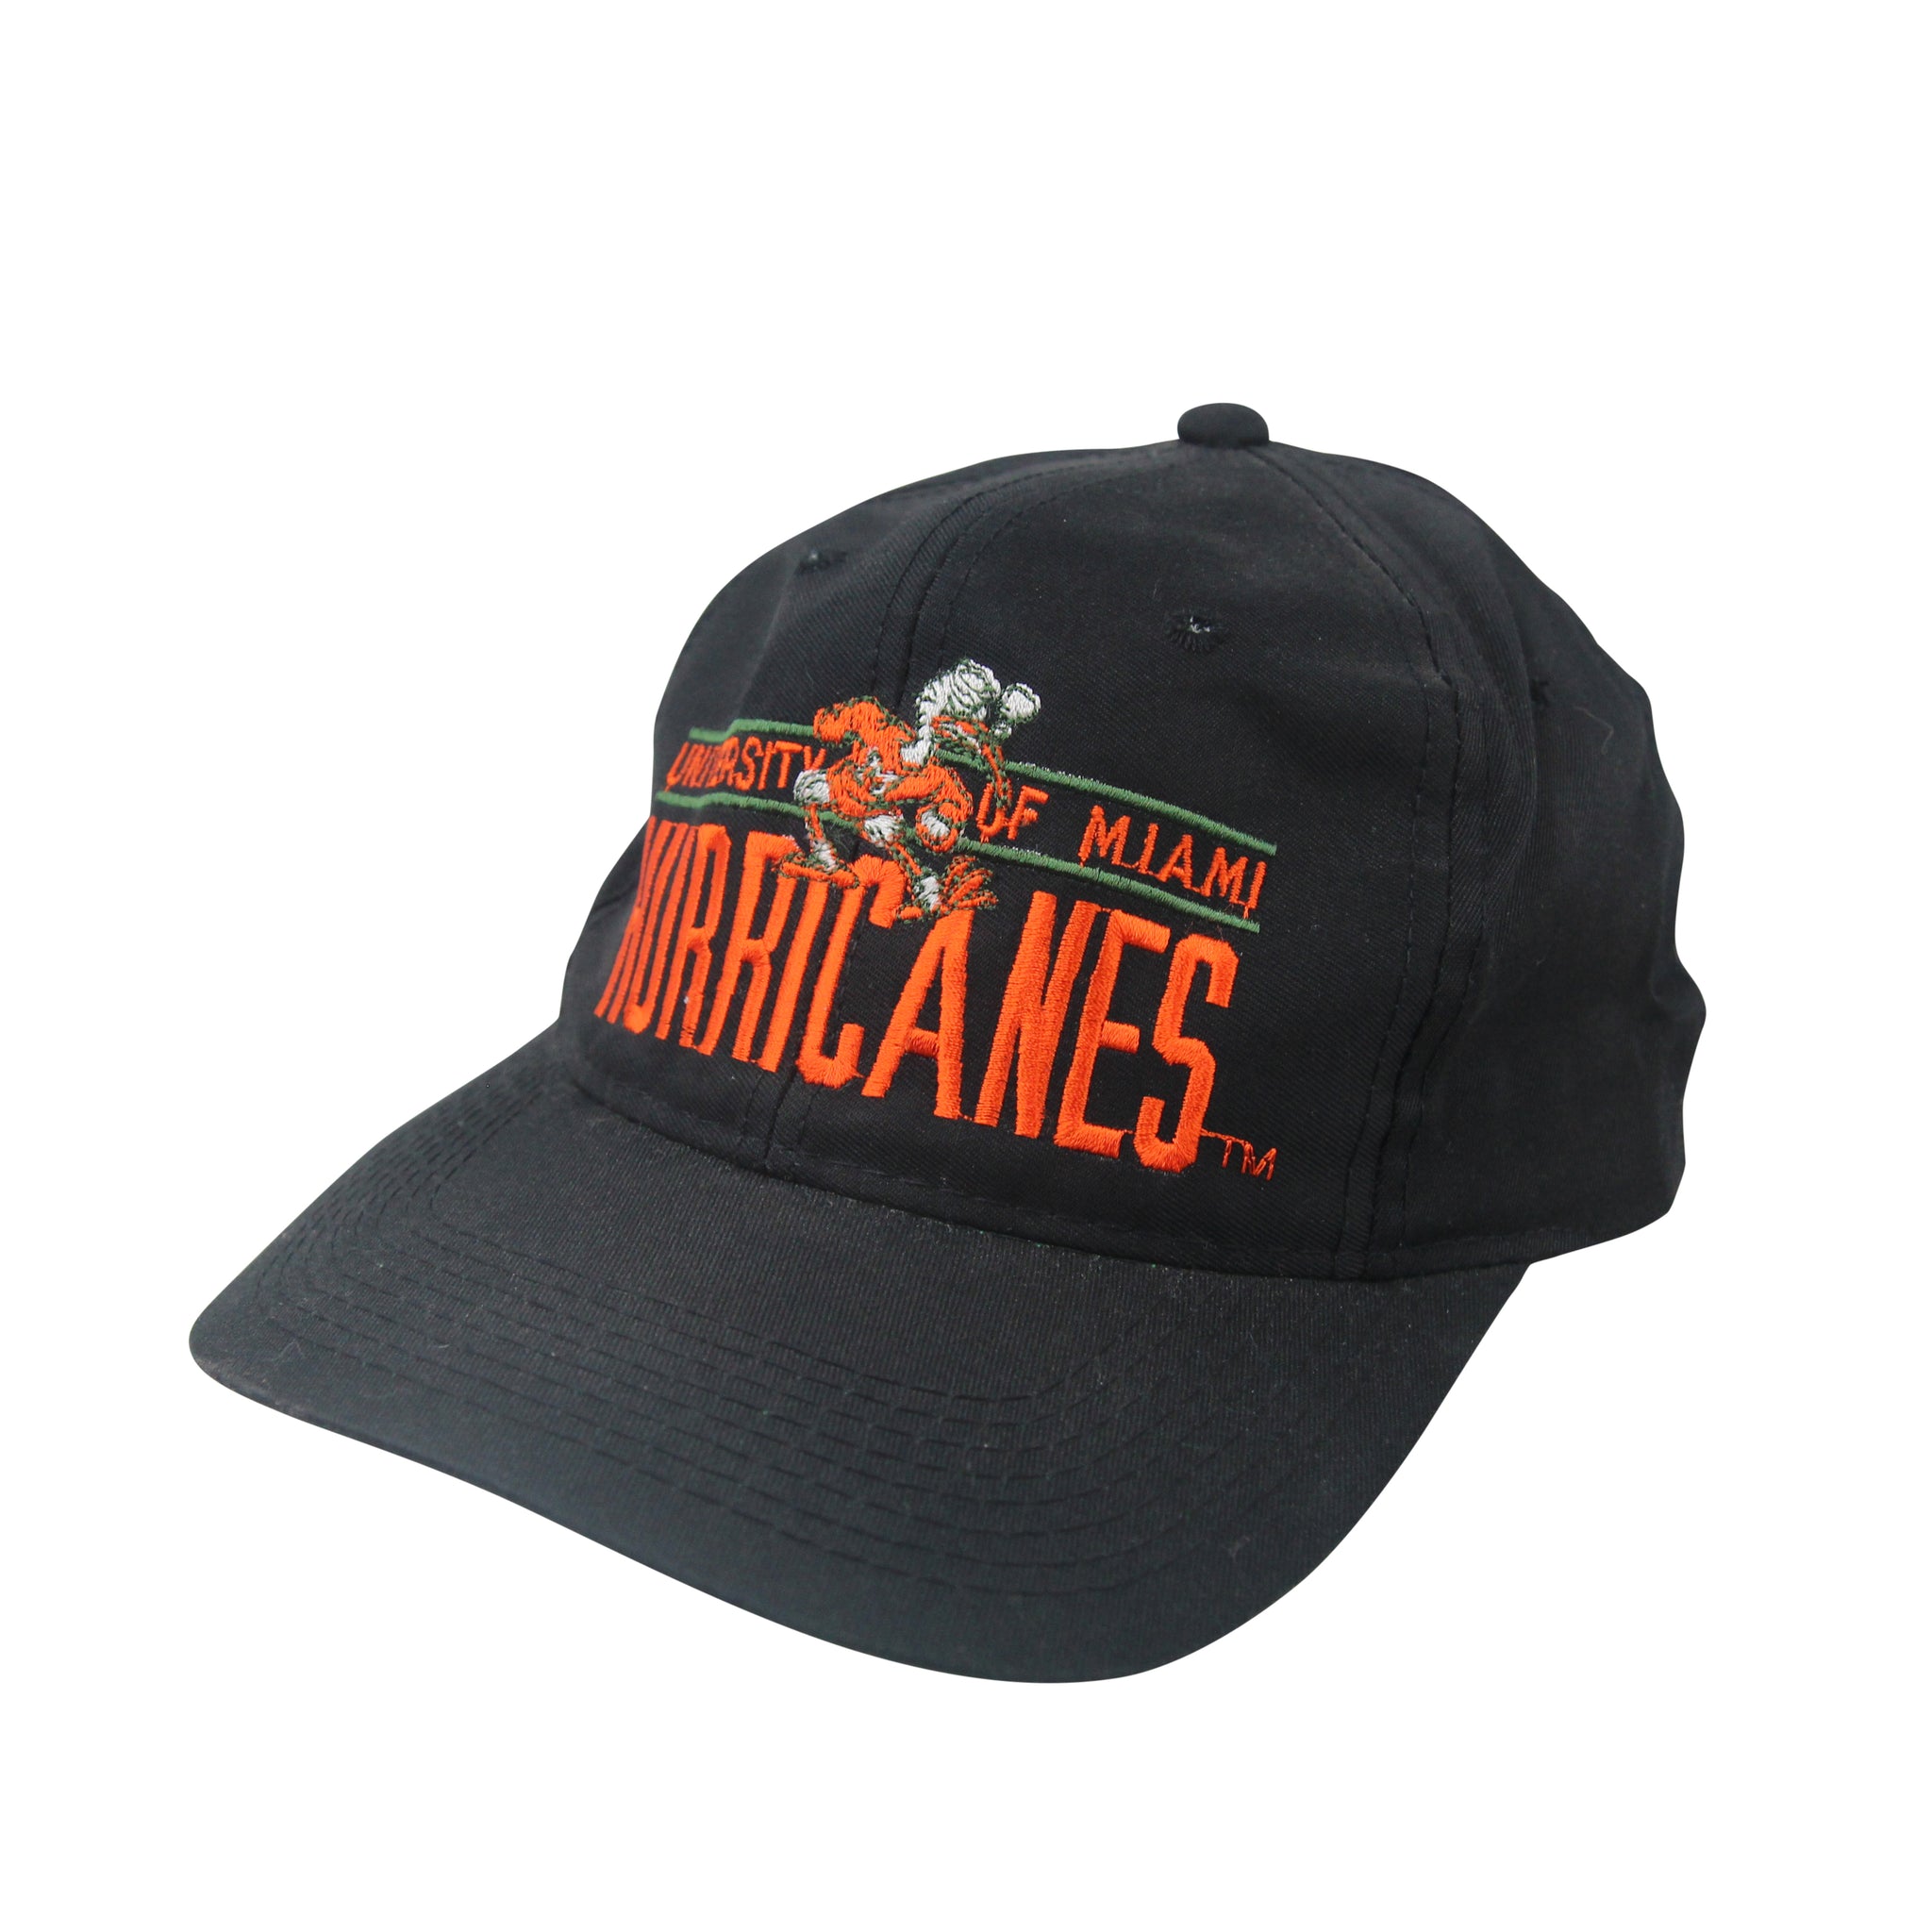 Vintage University Of Miami Hurricanes Hat